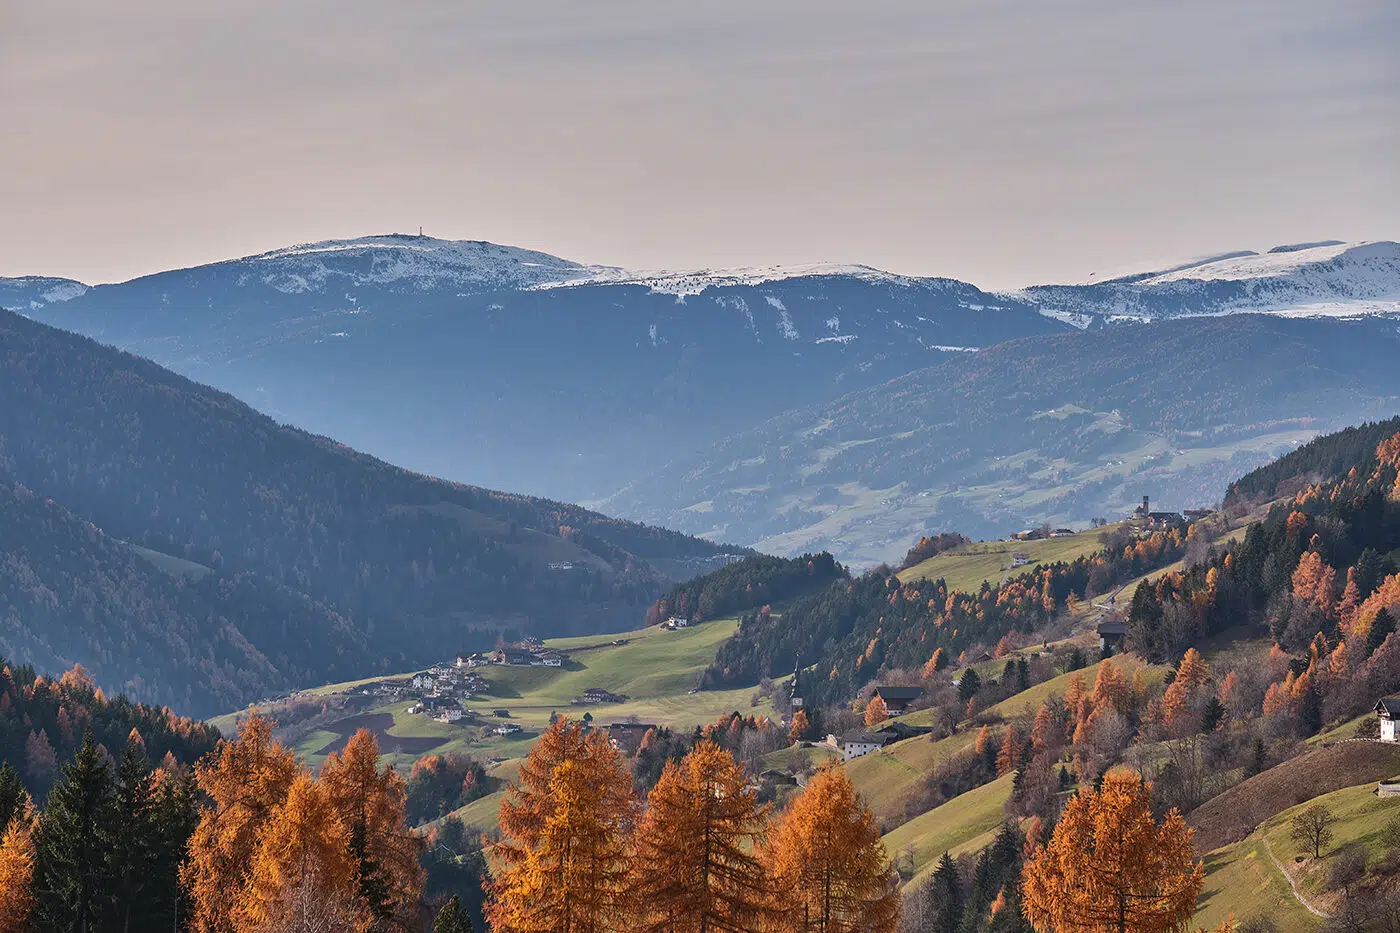 Paysage magnifique dans les Dolomites